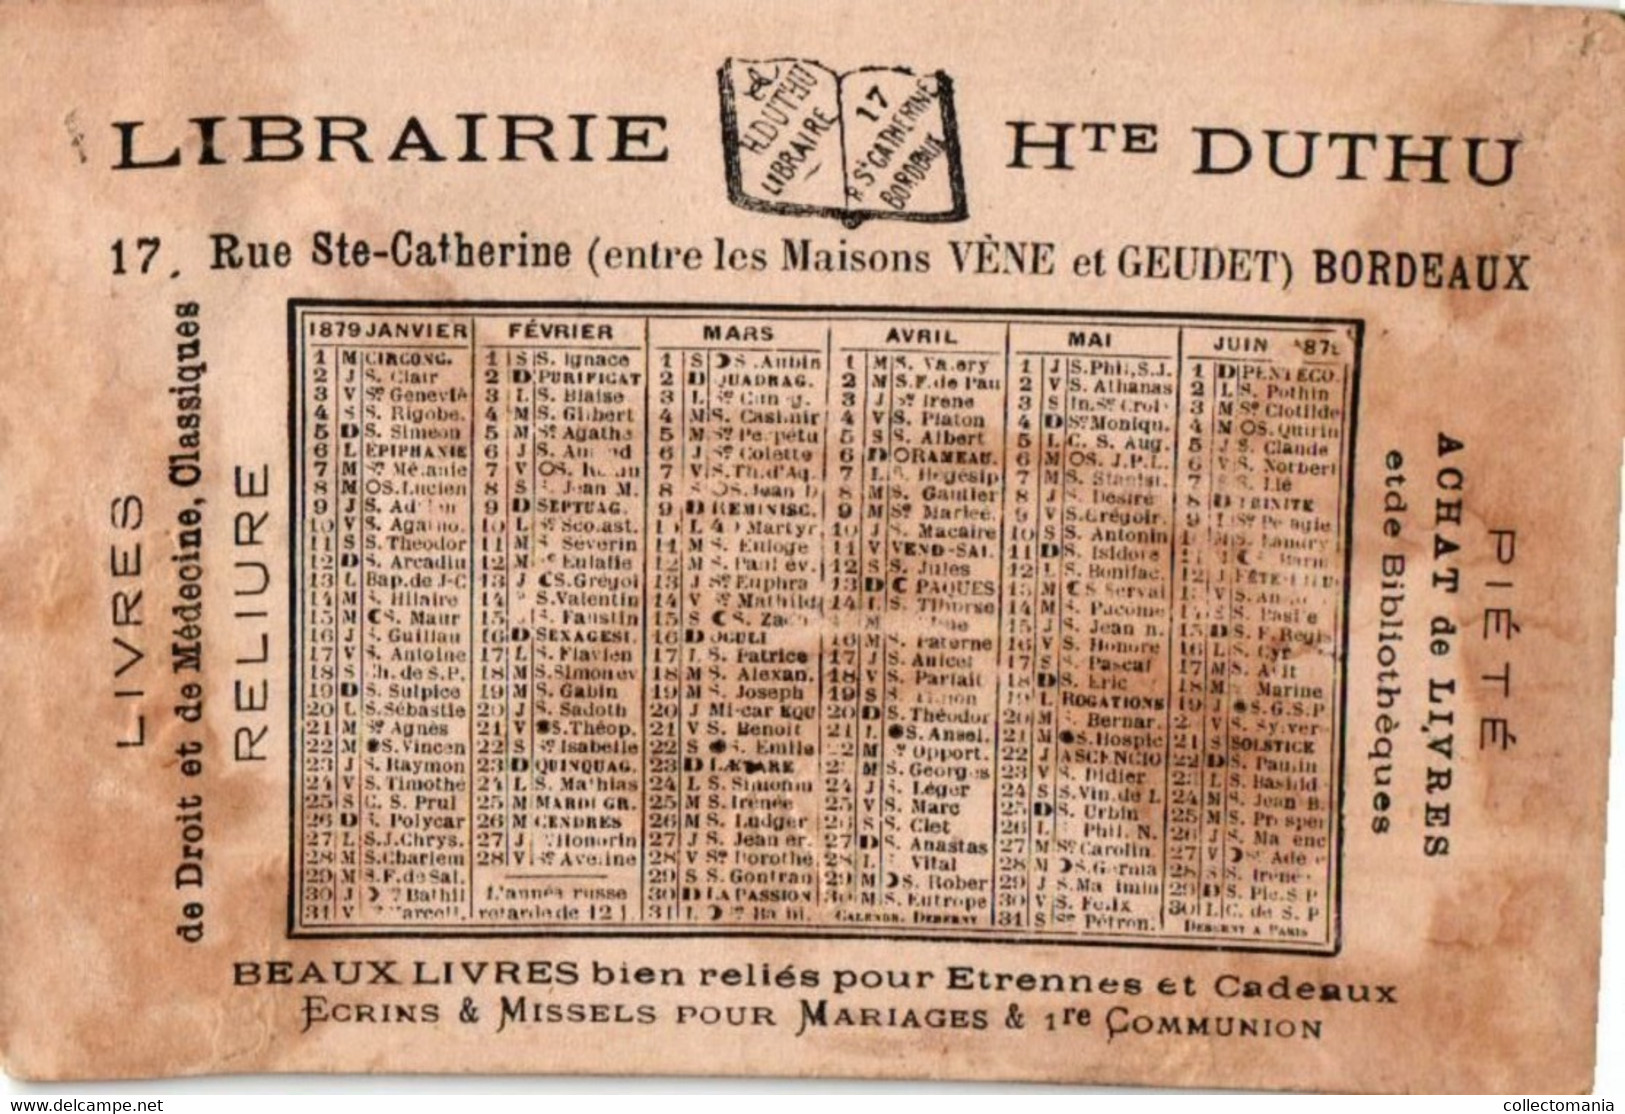 4 calendriers  1879  Libraire Hte Duthu  Livres  de Médicine  Bordeaux  La Paresse La Luxure   l'Orgueil    Litho